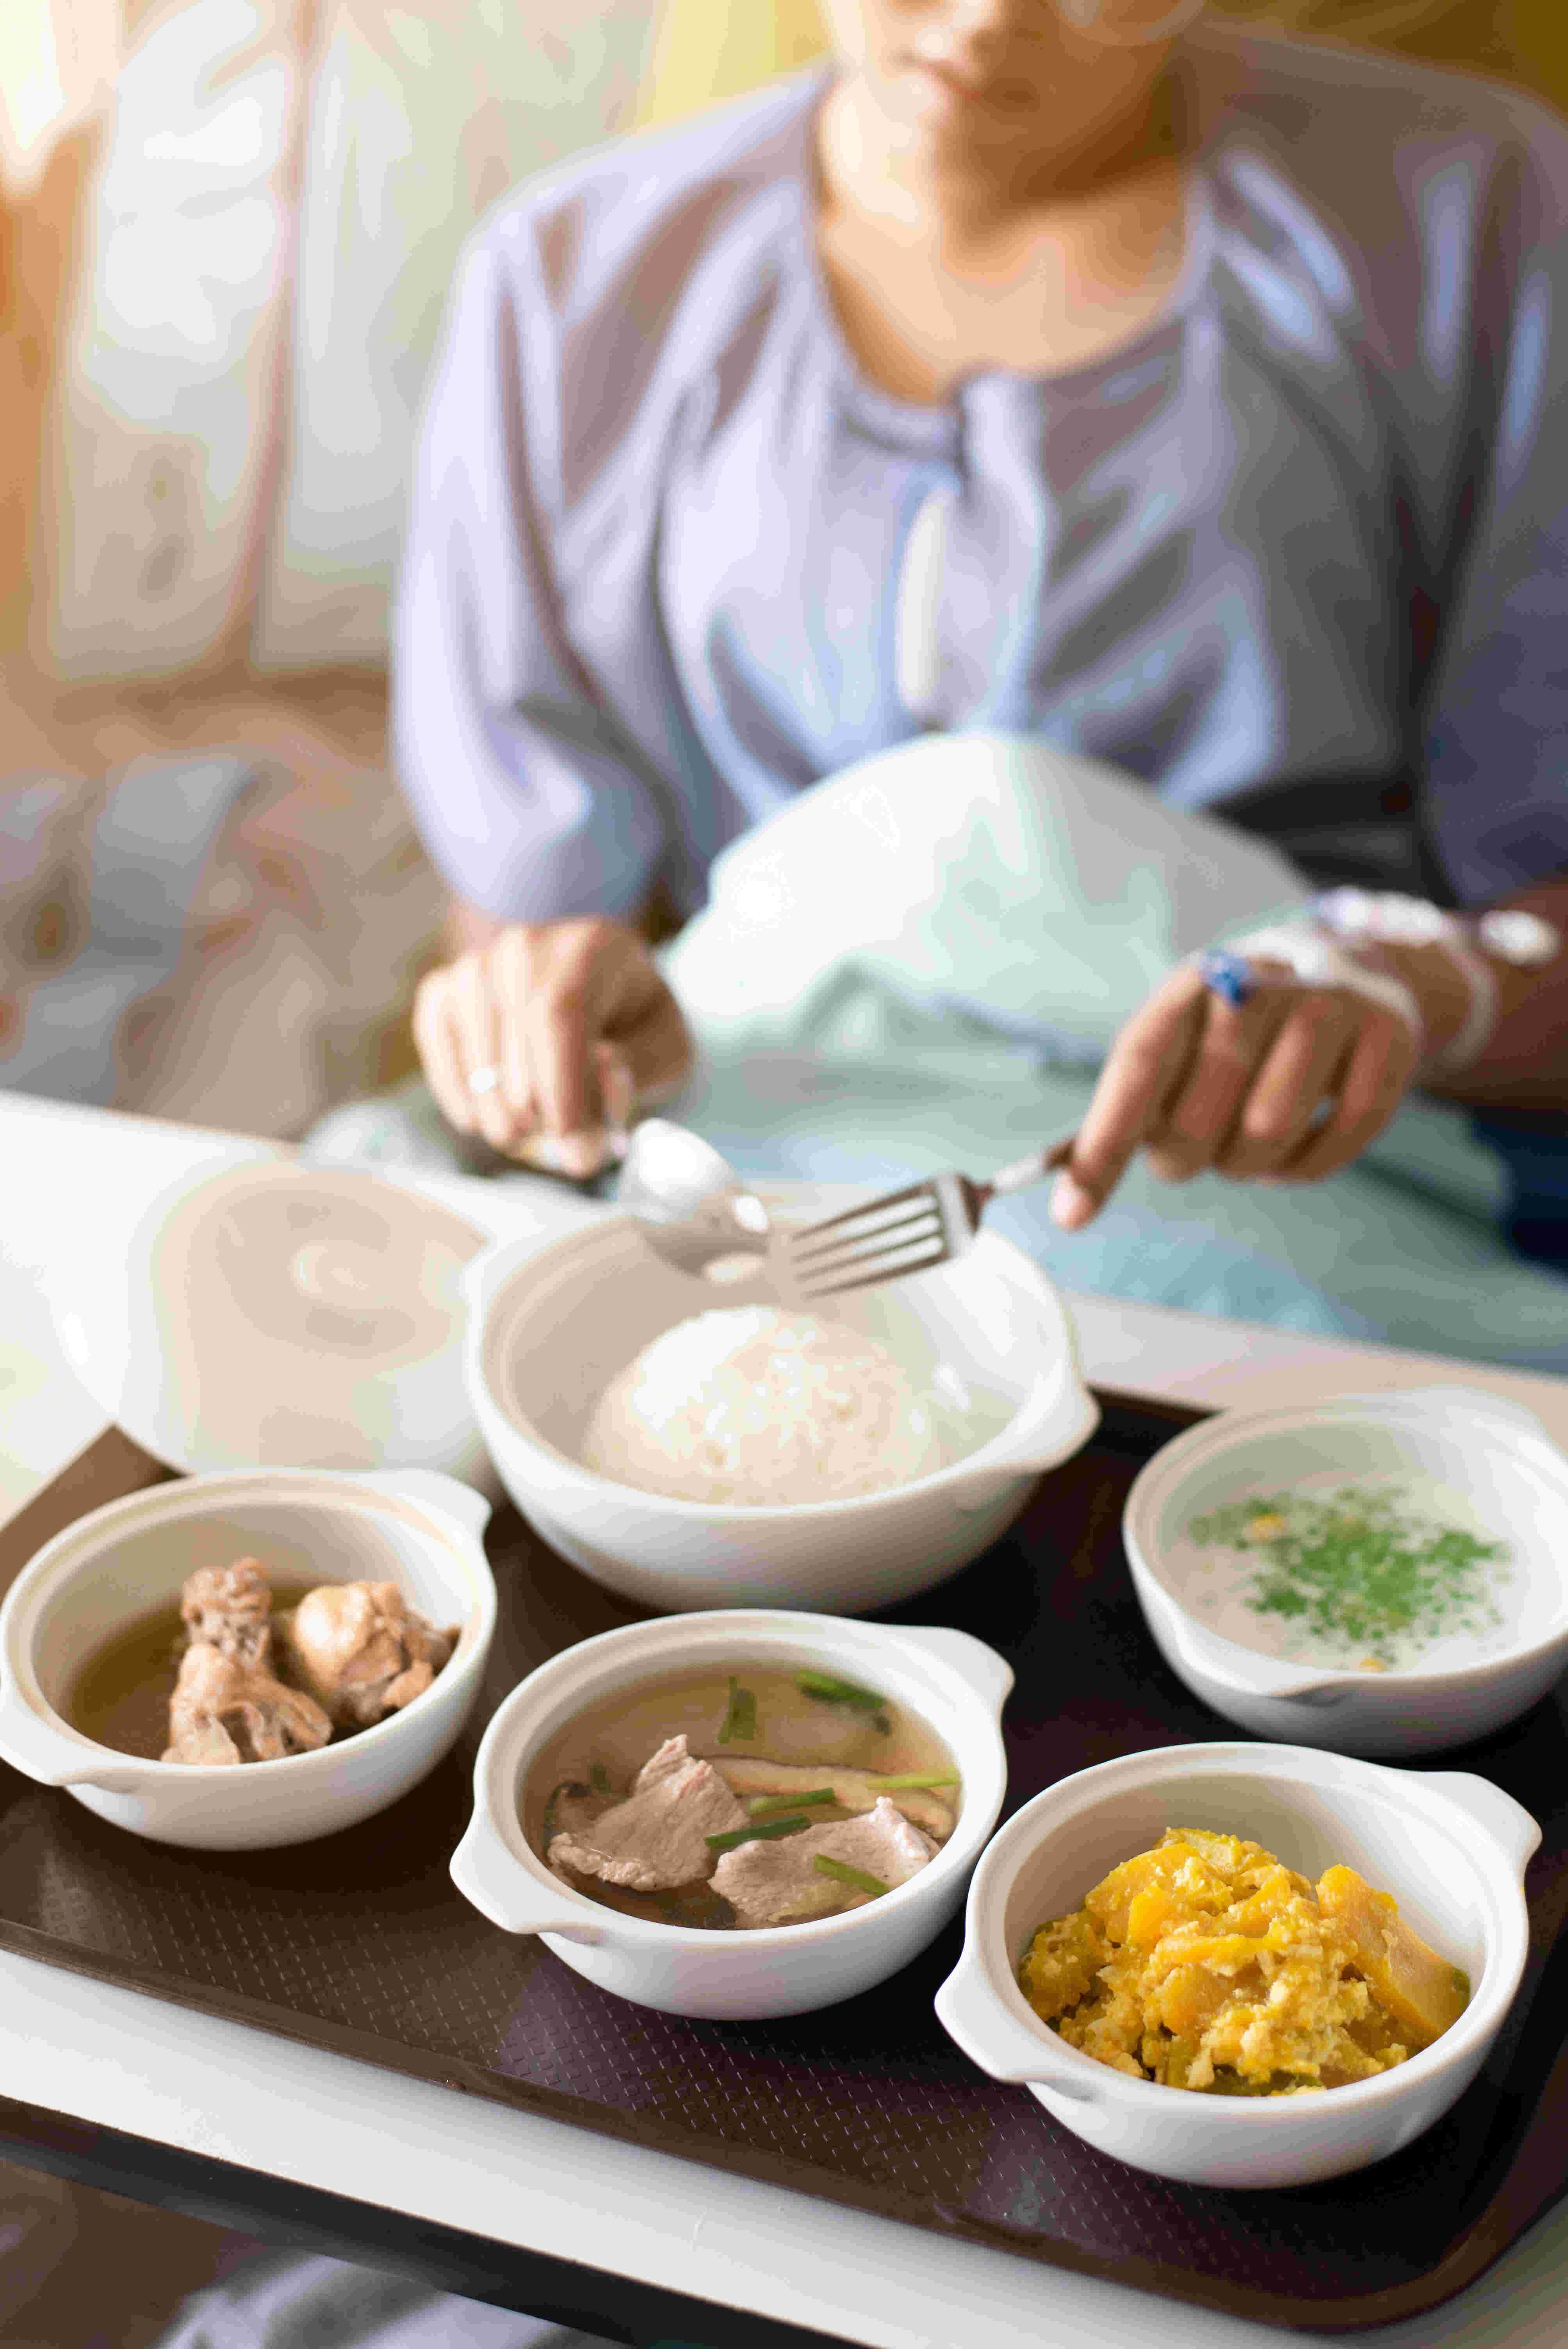 Une femme mange un plateau-repas : cinq plats en porcelaine blanche, certains avec couvercle, contenant des pâtes, du riz, de la viande...